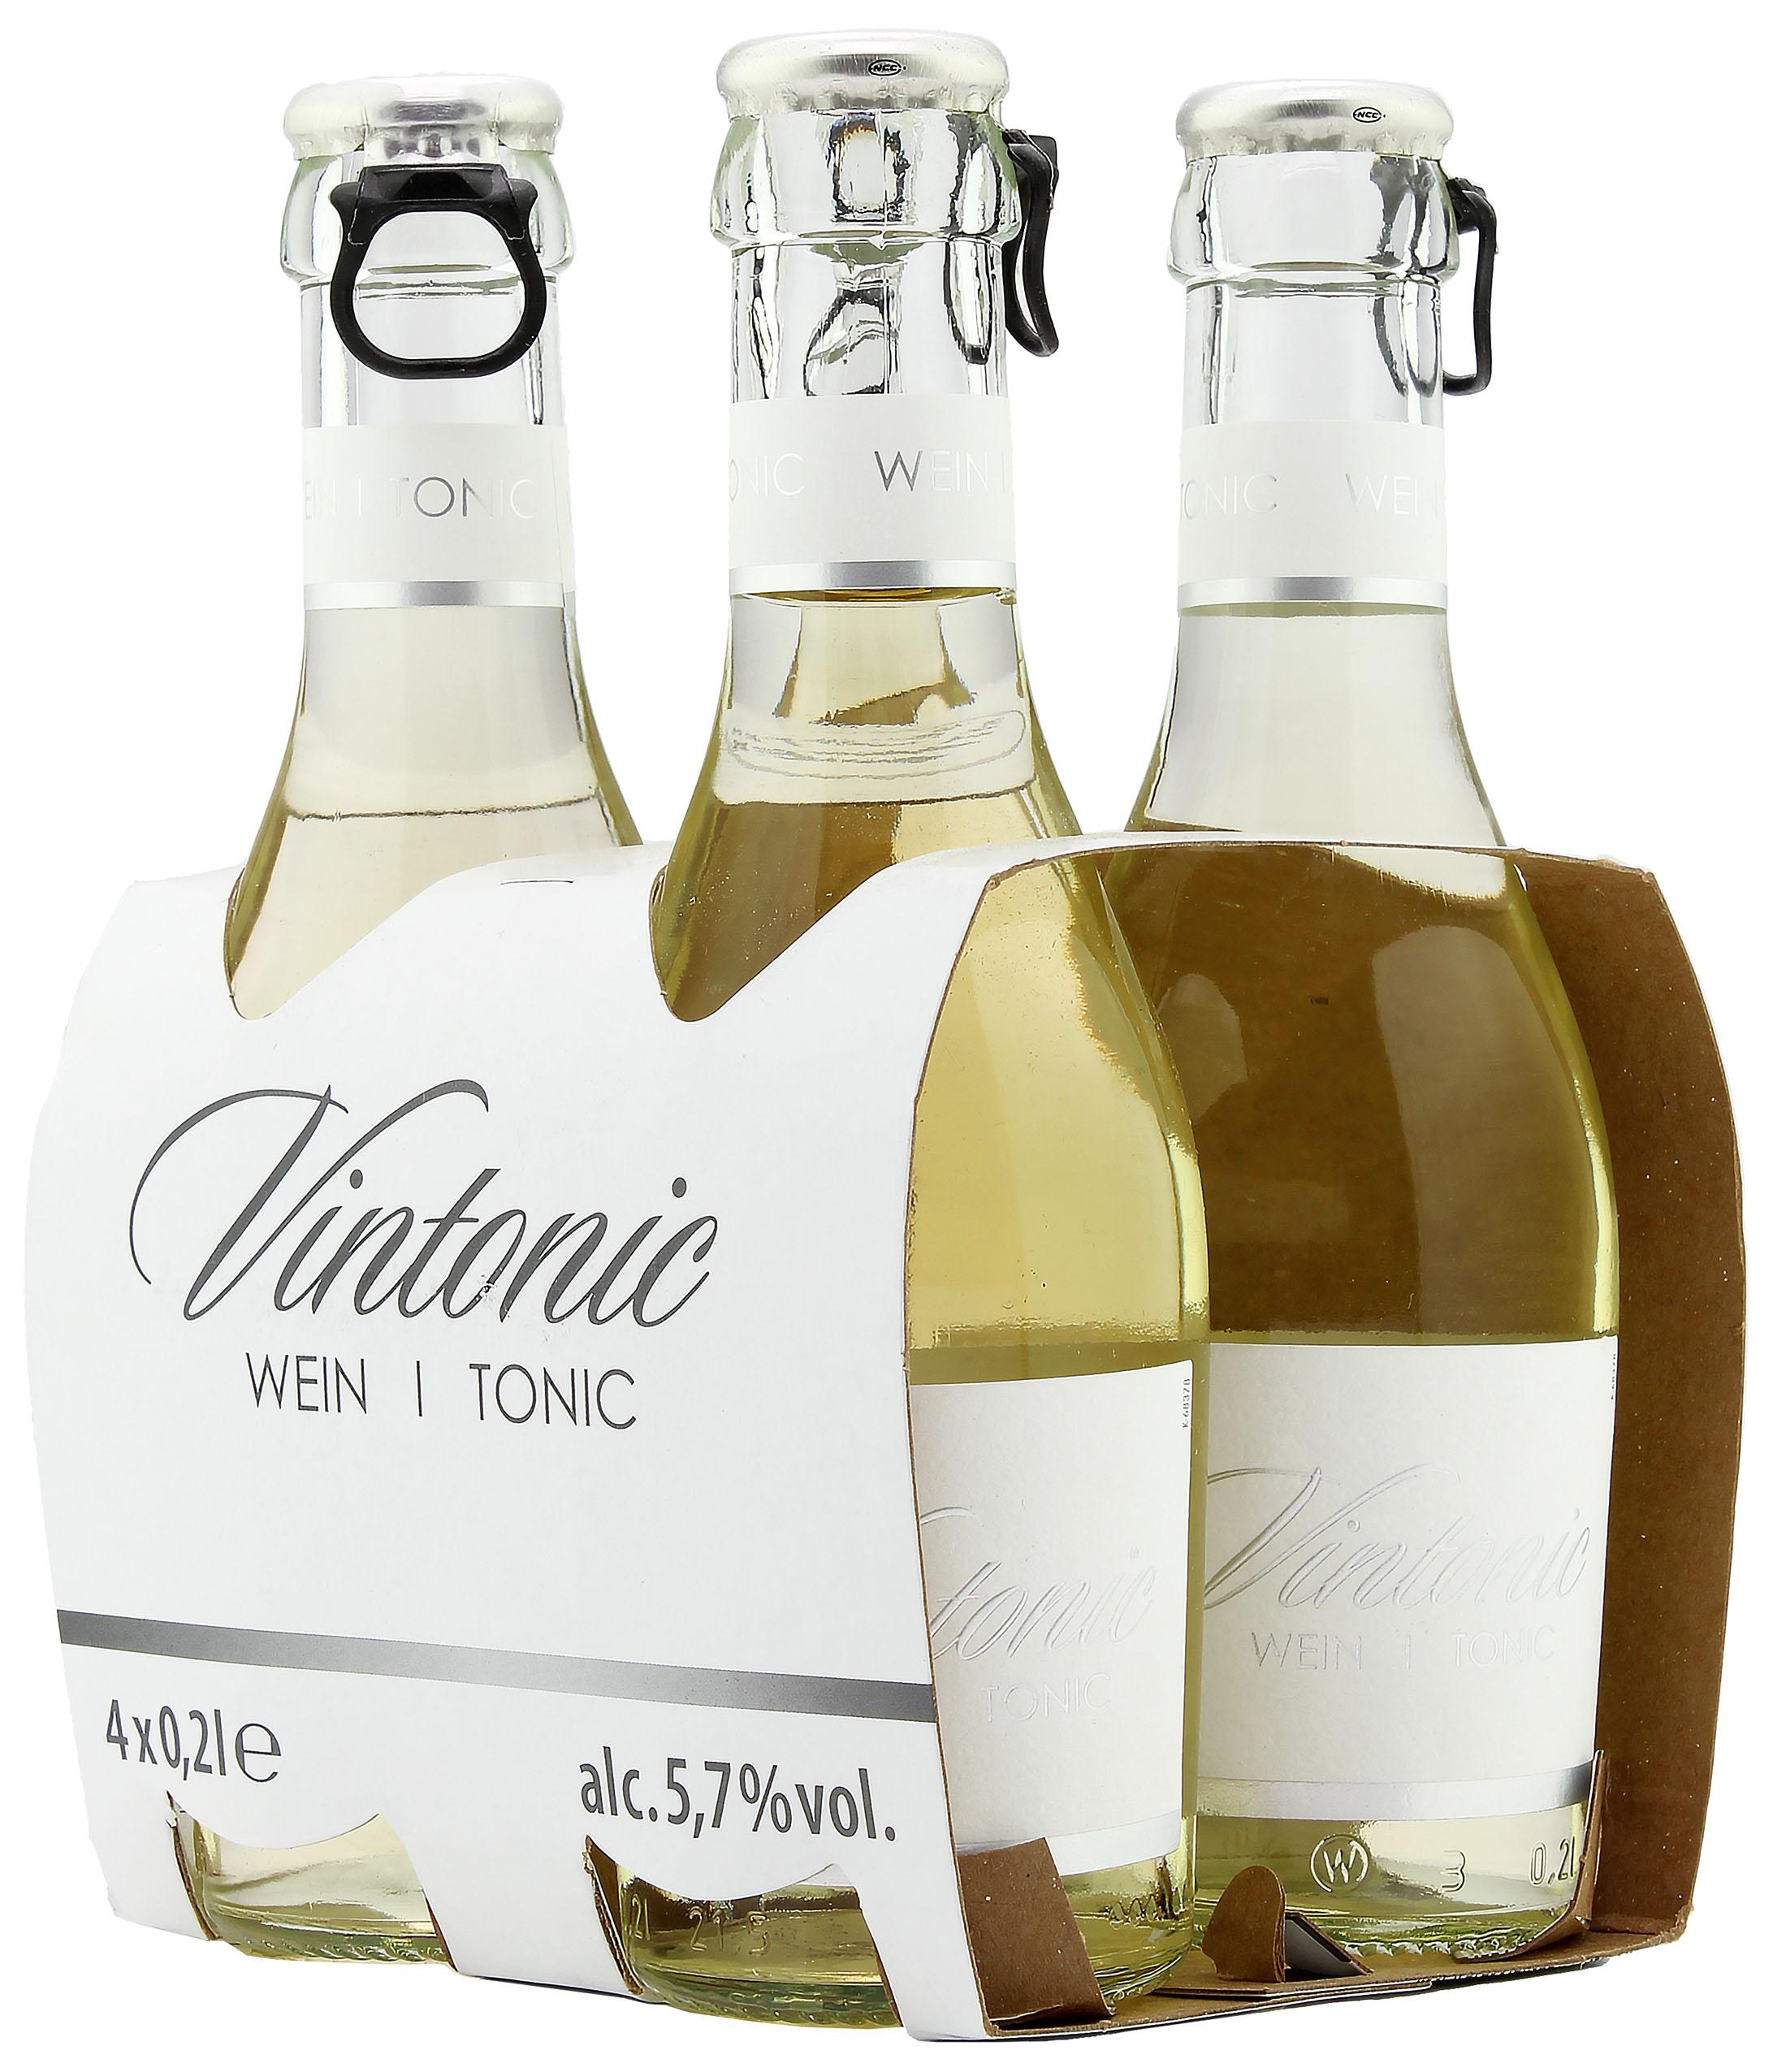 VinTonic Wein/Tonic